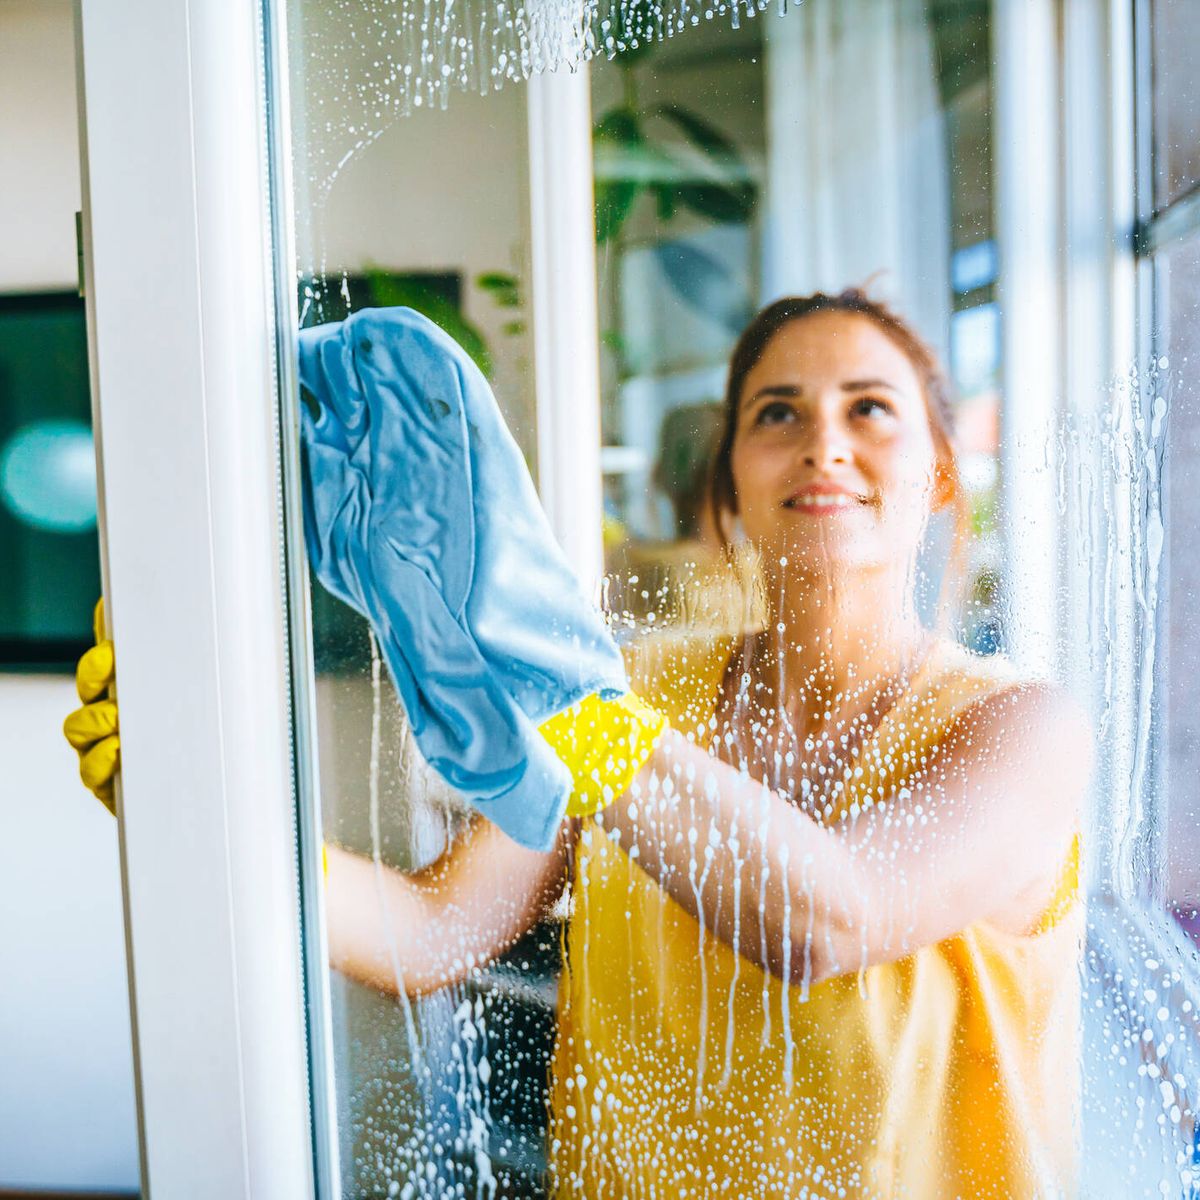 Trucos para limpiar los cristales de tu casa y dejarlos impecables - Foto 1